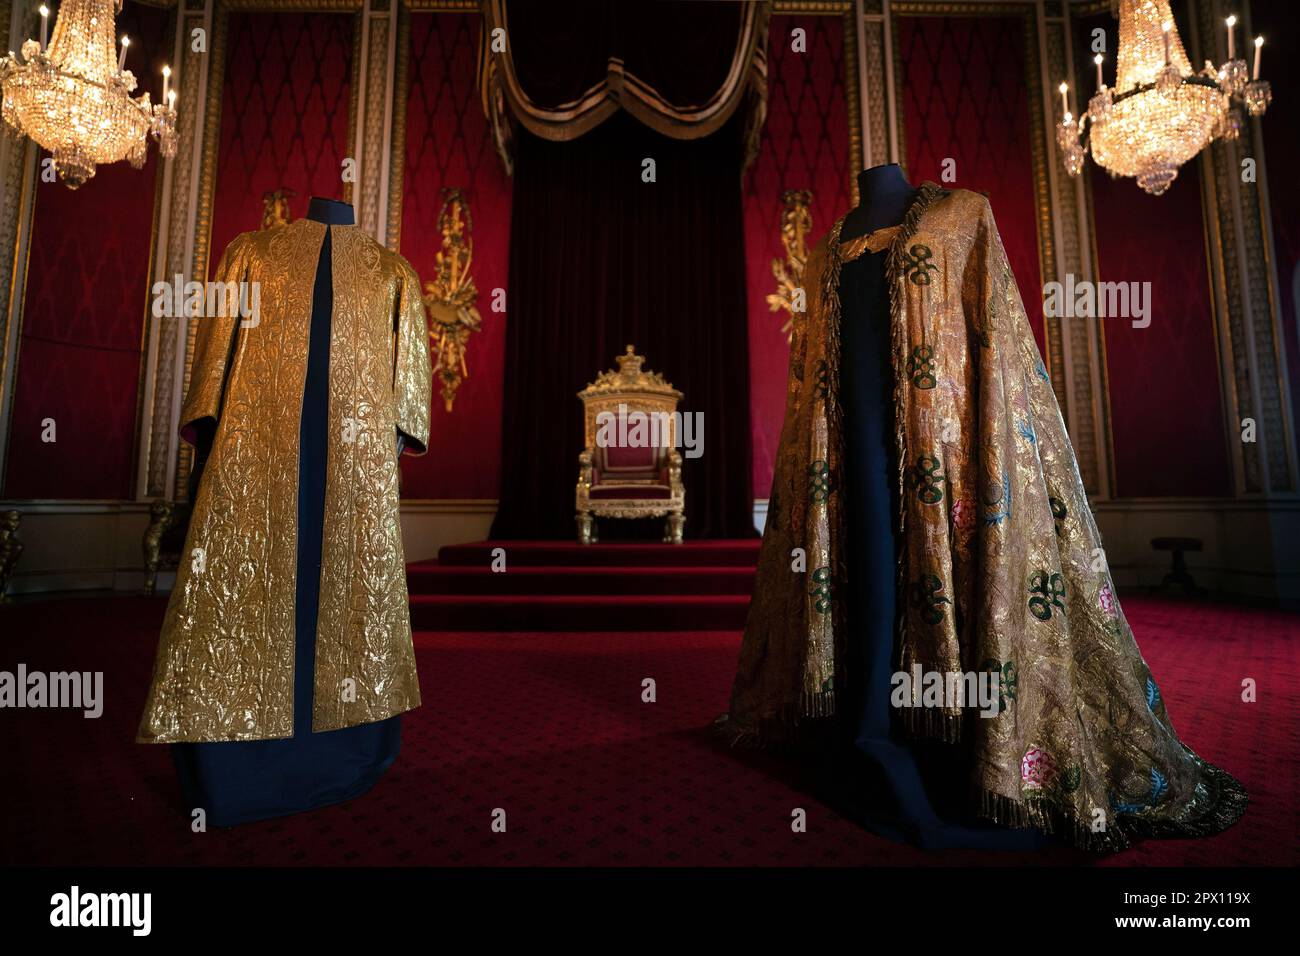 Les vêtements de Coronation, comprenant la Supertunica (à gauche) et le  manteau impérial (à droite), exposés dans la salle du Trône à Buckingham  Palace, Londres. Les vêtements seront portés par le roi